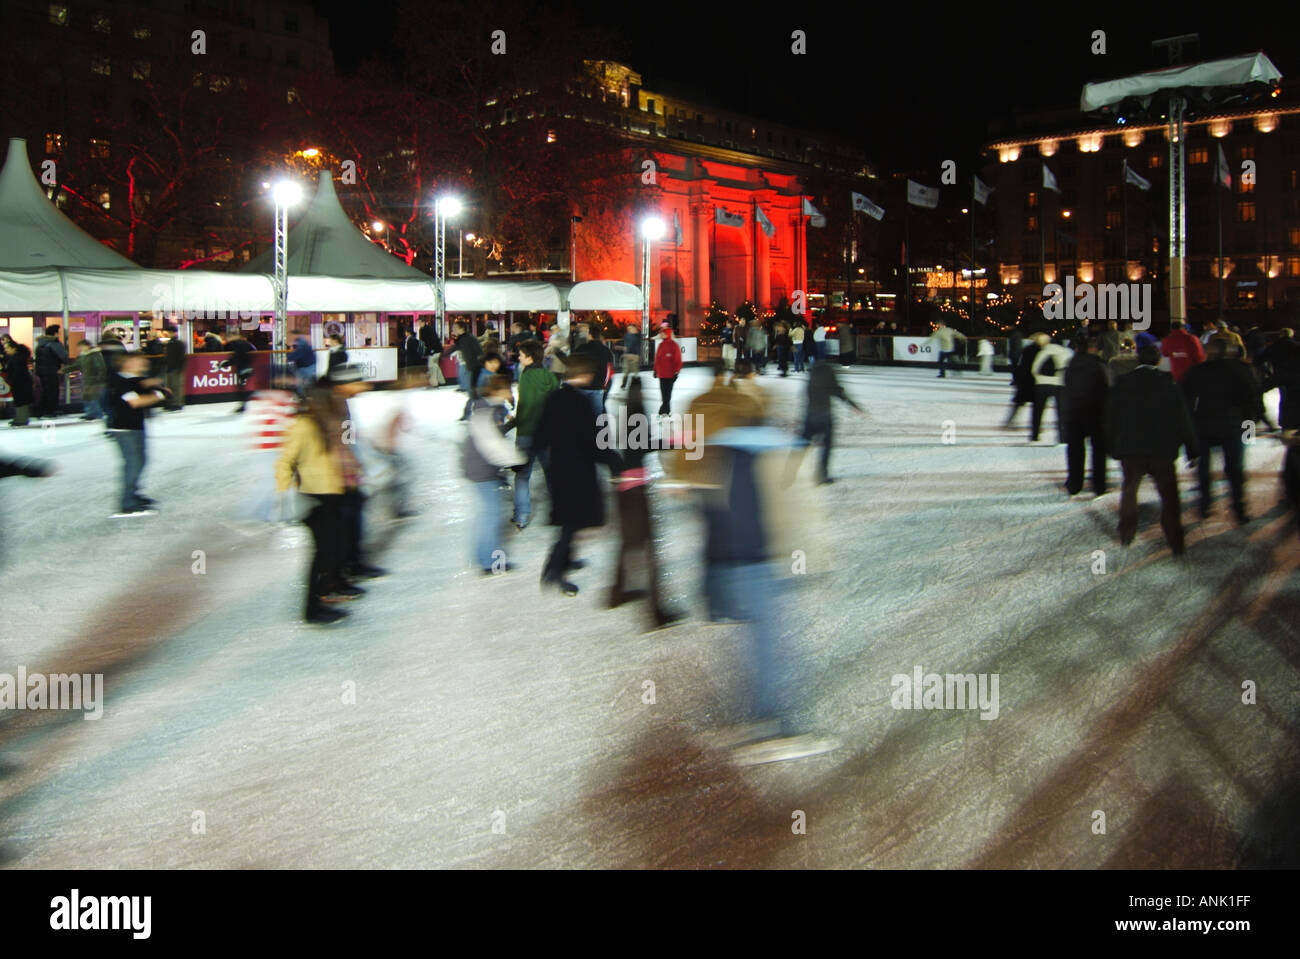 Bewegungsunschärfen Skater Menschen auf Eisbahn bei Flutlicht Weihnachten Wintersaison Skating Event West End Marble Arch rot beleuchtet Flutlichter London England Großbritannien Stockfoto